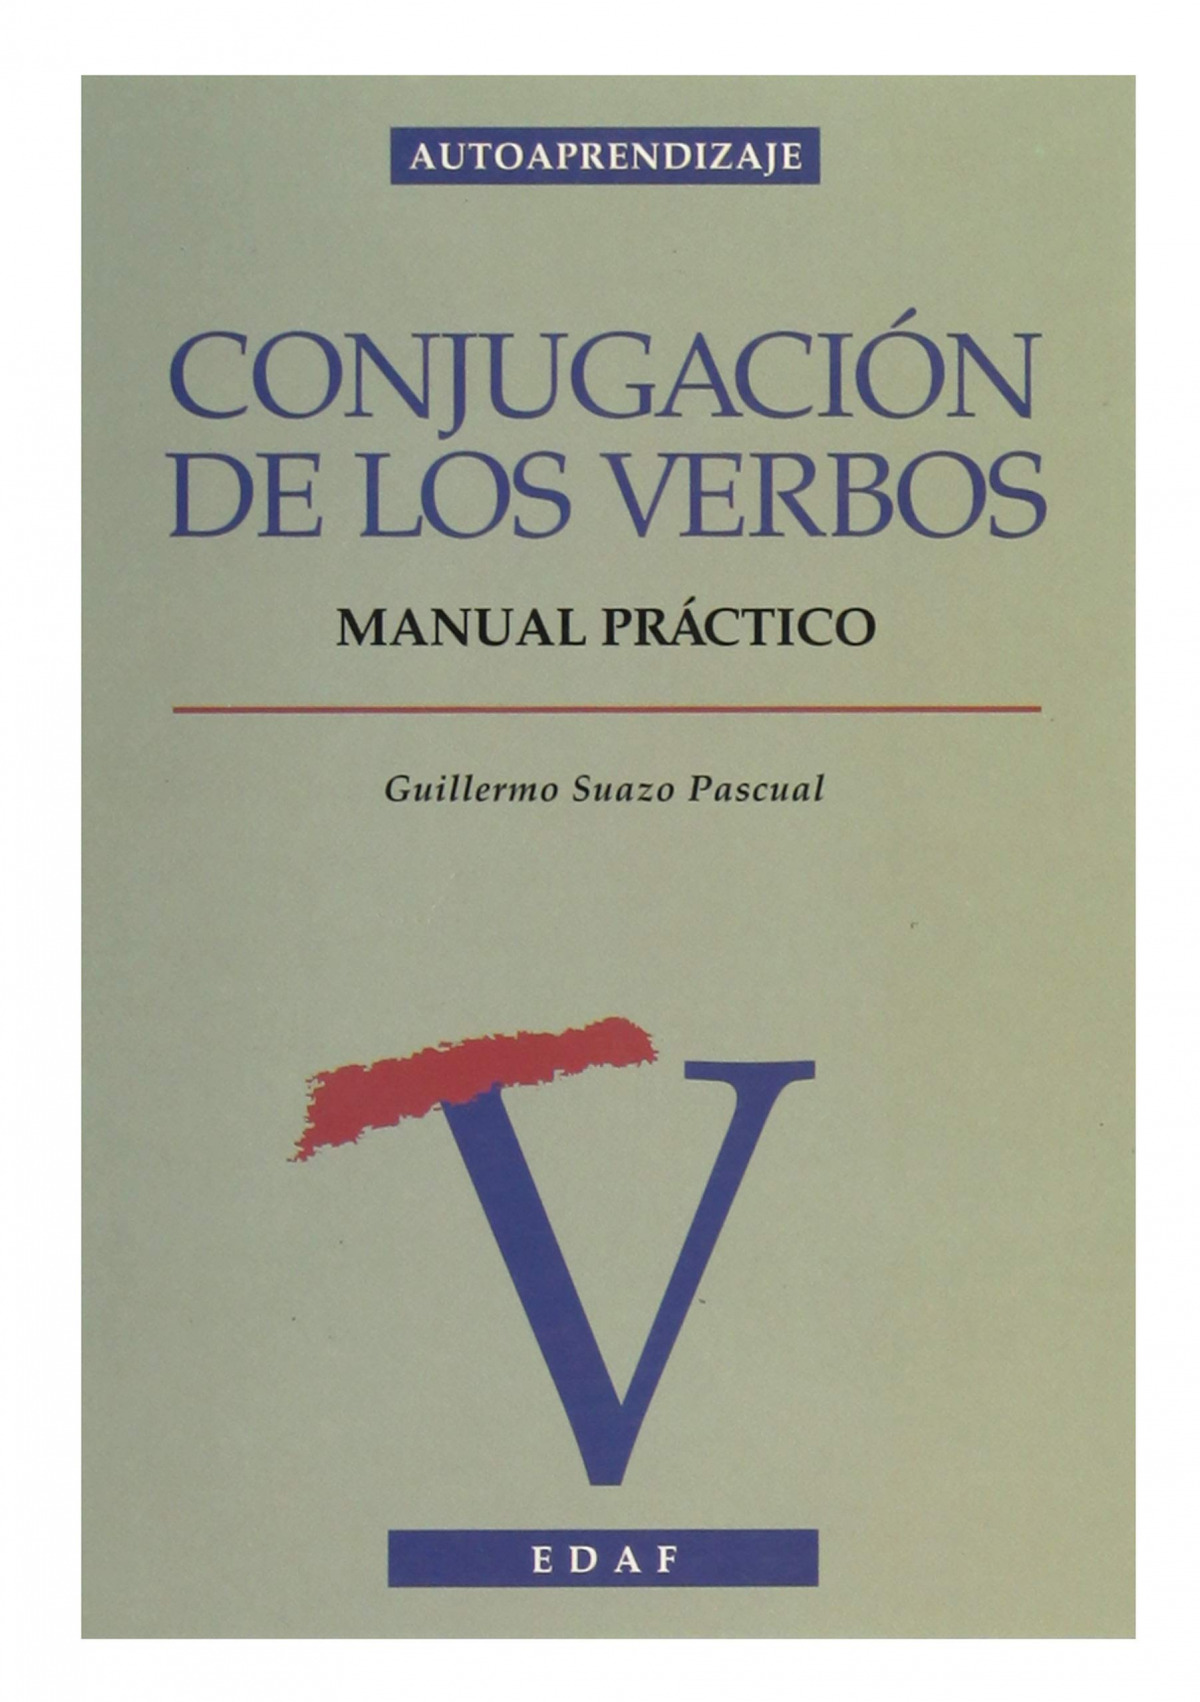 Conjugacion de los verbos - Suazo Pascual, Guillermo.